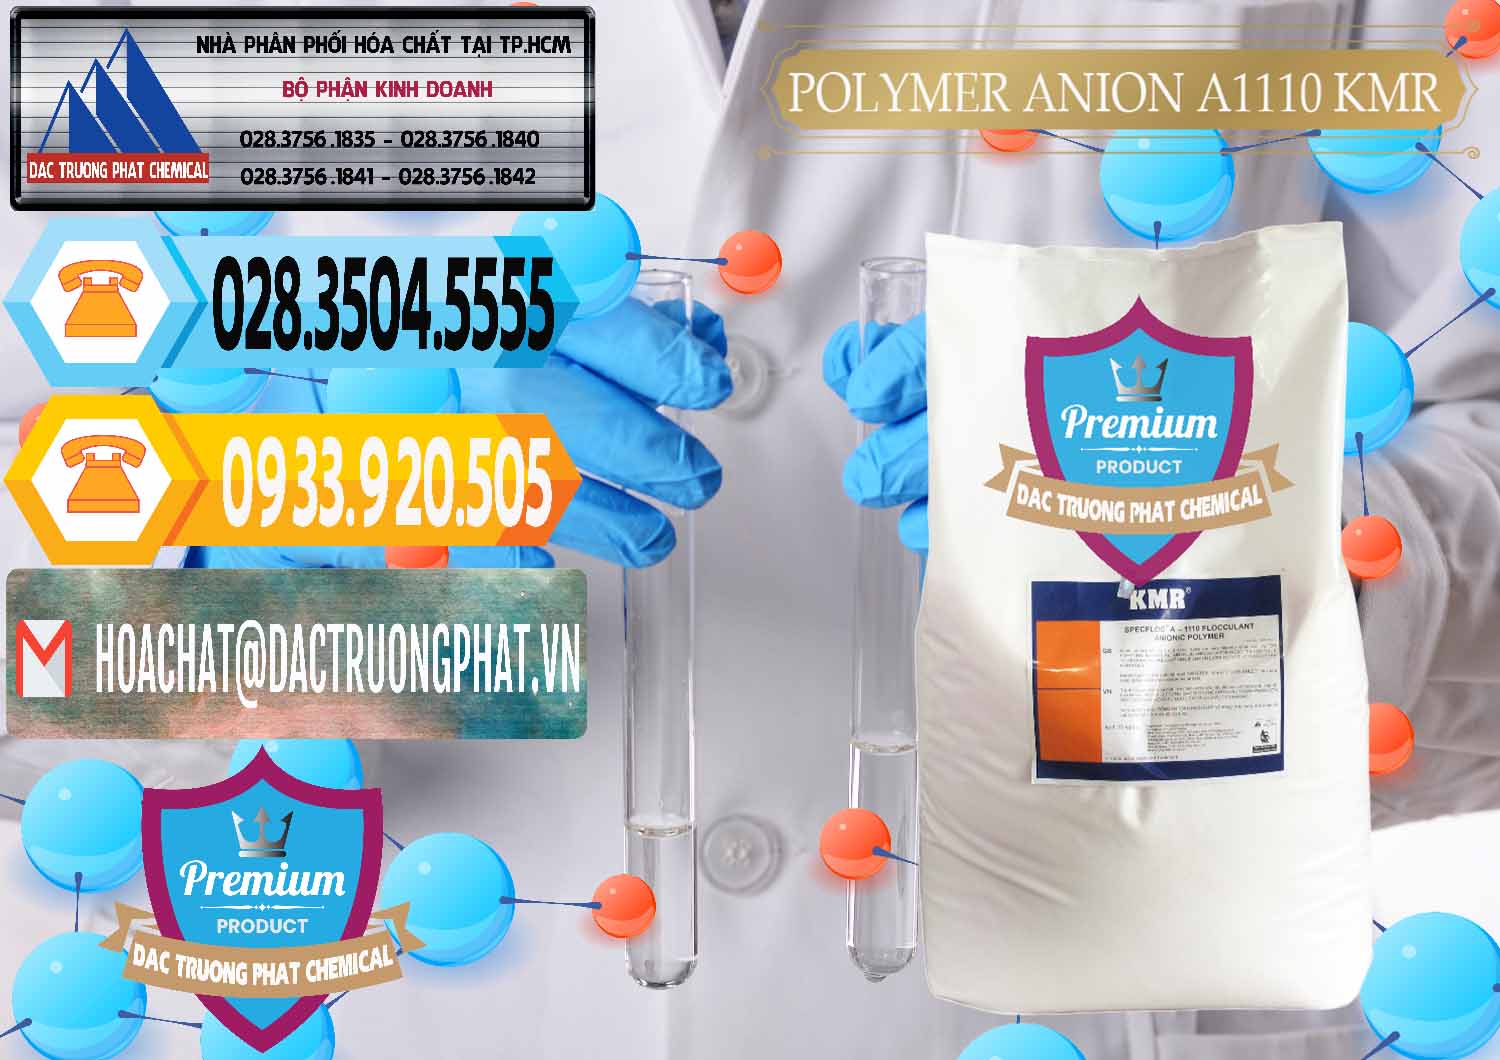 Chuyên nhập khẩu ( bán ) Polymer Anion A1110 - KMR Anh Quốc England - 0118 - Phân phối ( bán ) hóa chất tại TP.HCM - hoachattayrua.net